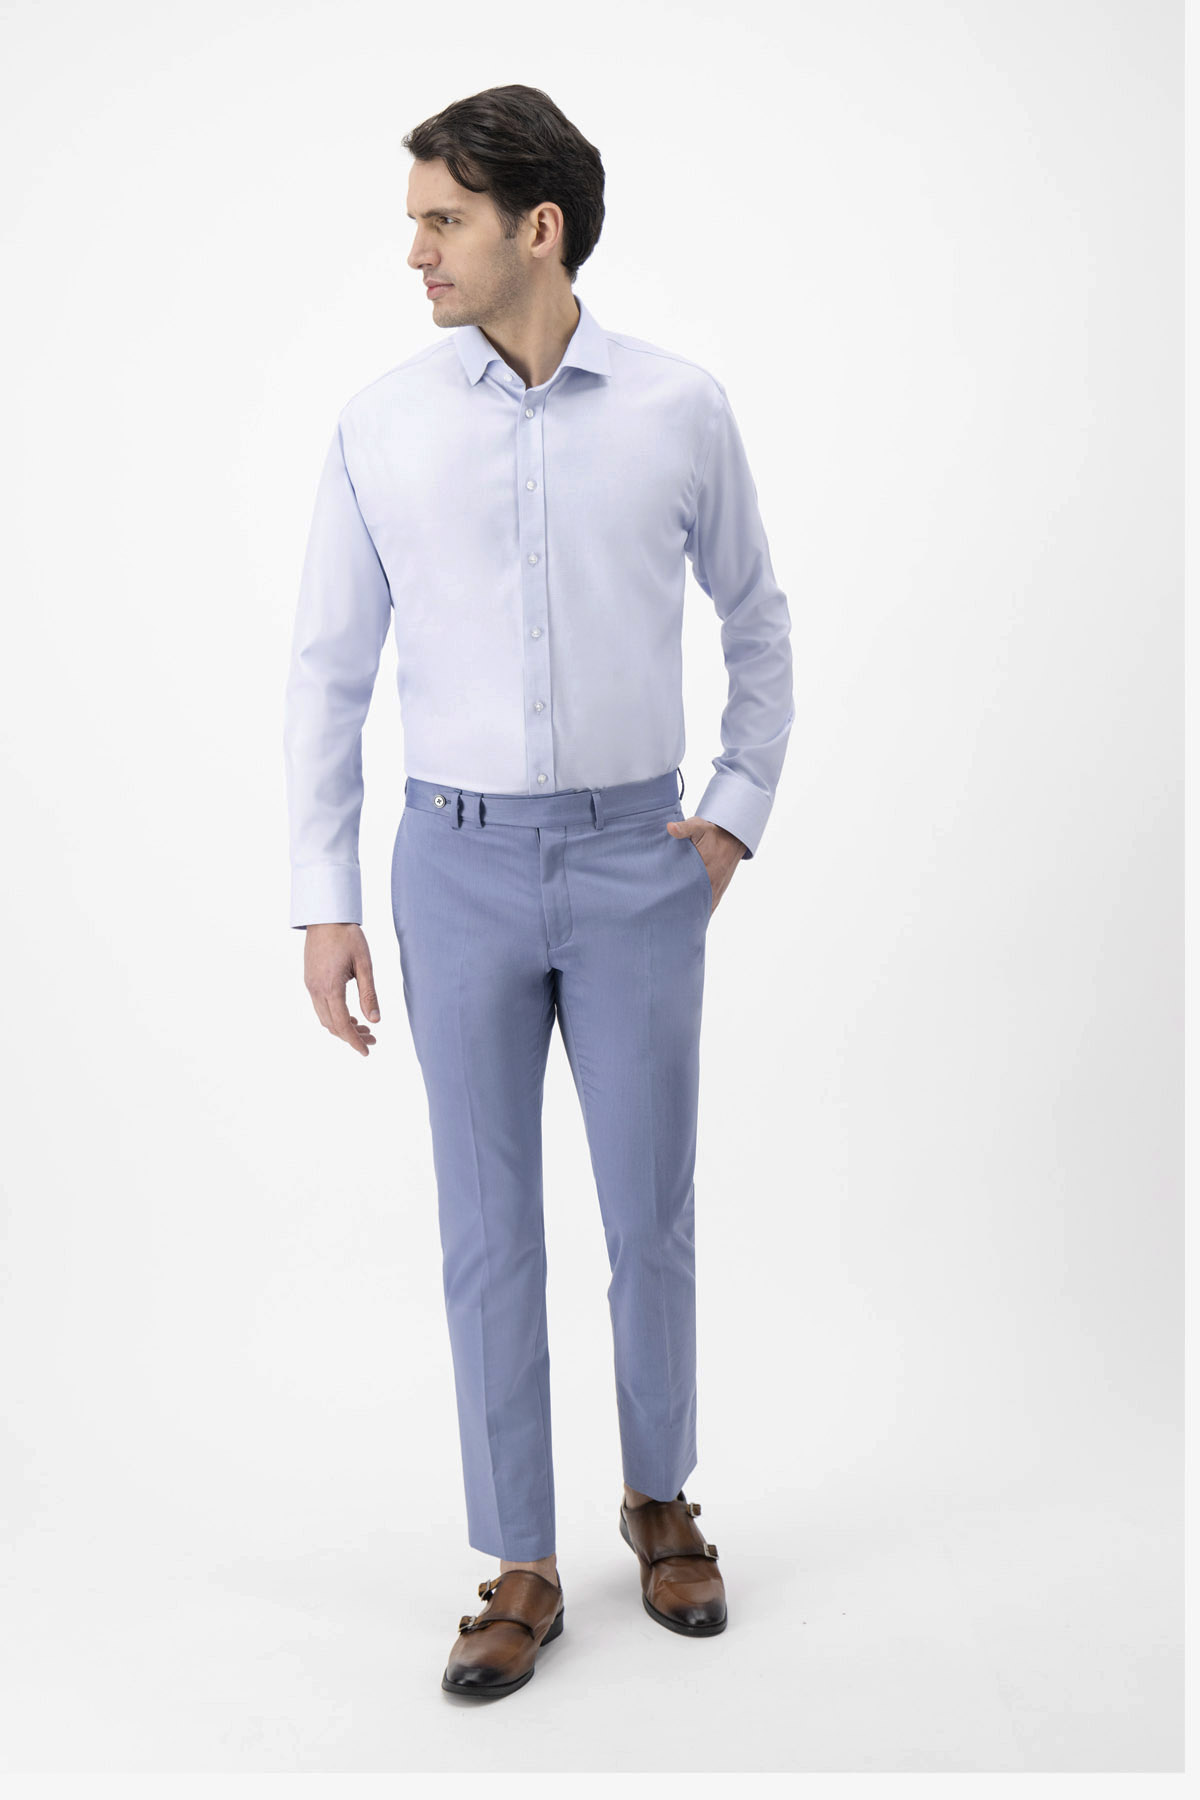 Pantalón Formal Calderoni Azul Slim Fit